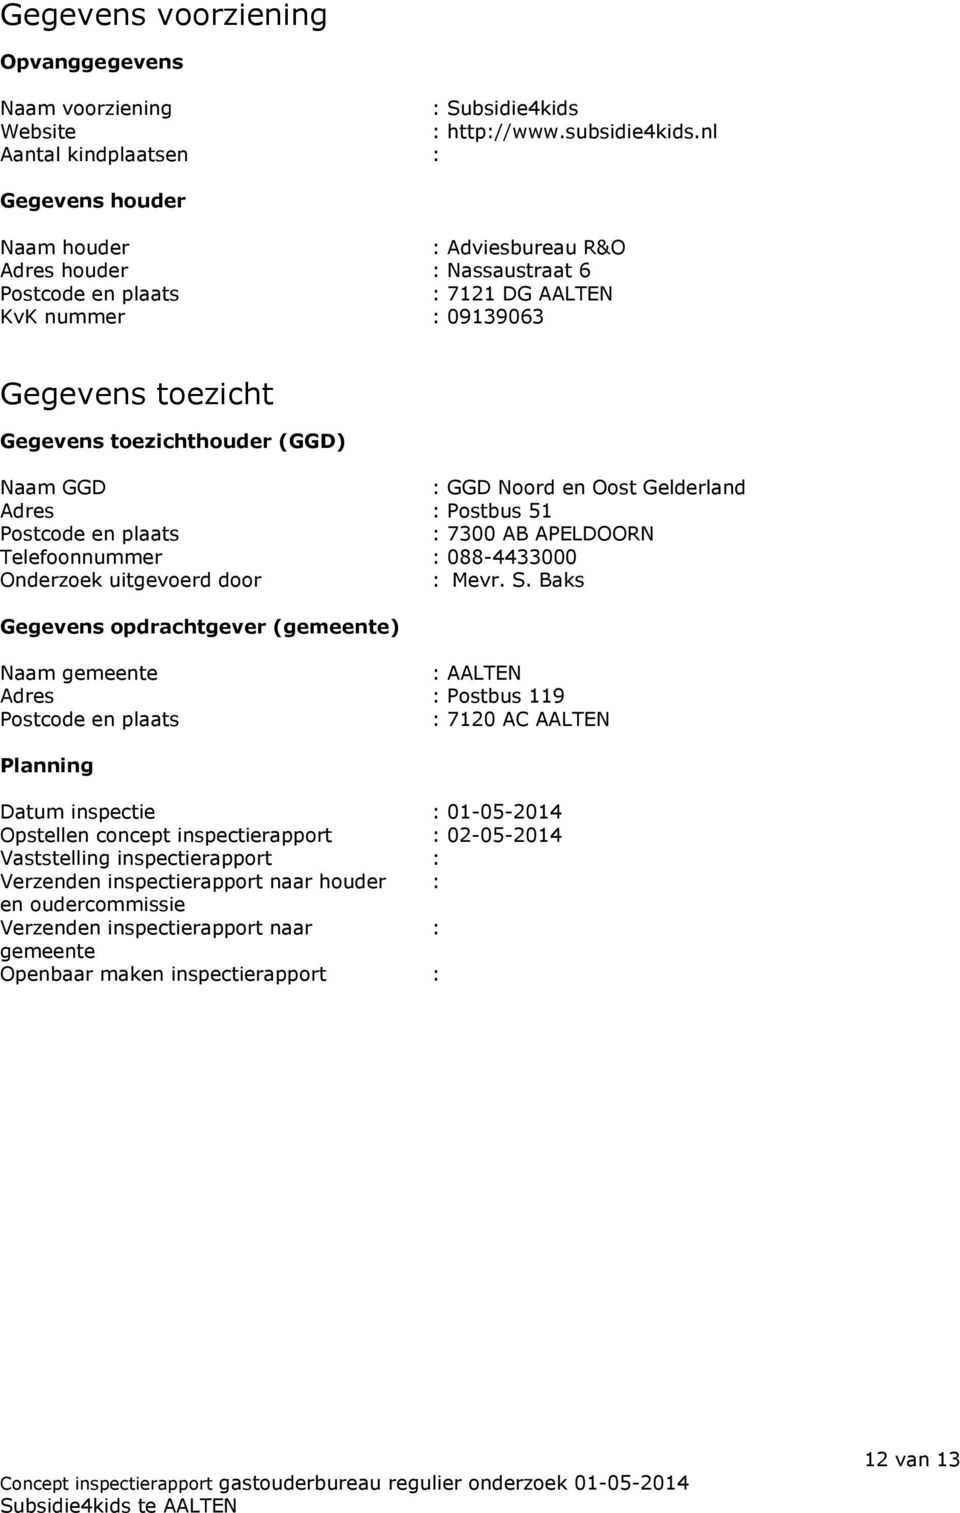 toezichthouder (GGD) Naam GGD : GGD Noord en Oost Gelderland Adres : Postbus 51 Postcode en plaats : 7300 AB APELDOORN Telefoonnummer : 088-4433000 Onderzoek uitgevoerd door : Mevr. S.